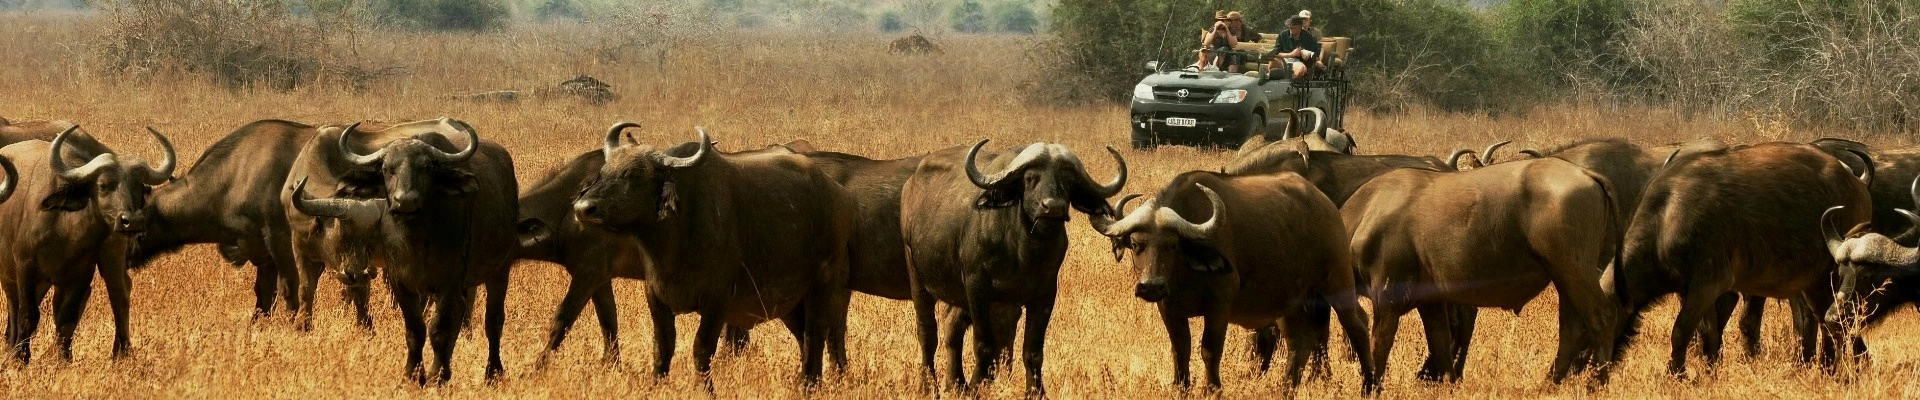 Стадо буйволов, парк Южная Луангва, Замбия, Африка, сафари, тур в Африку